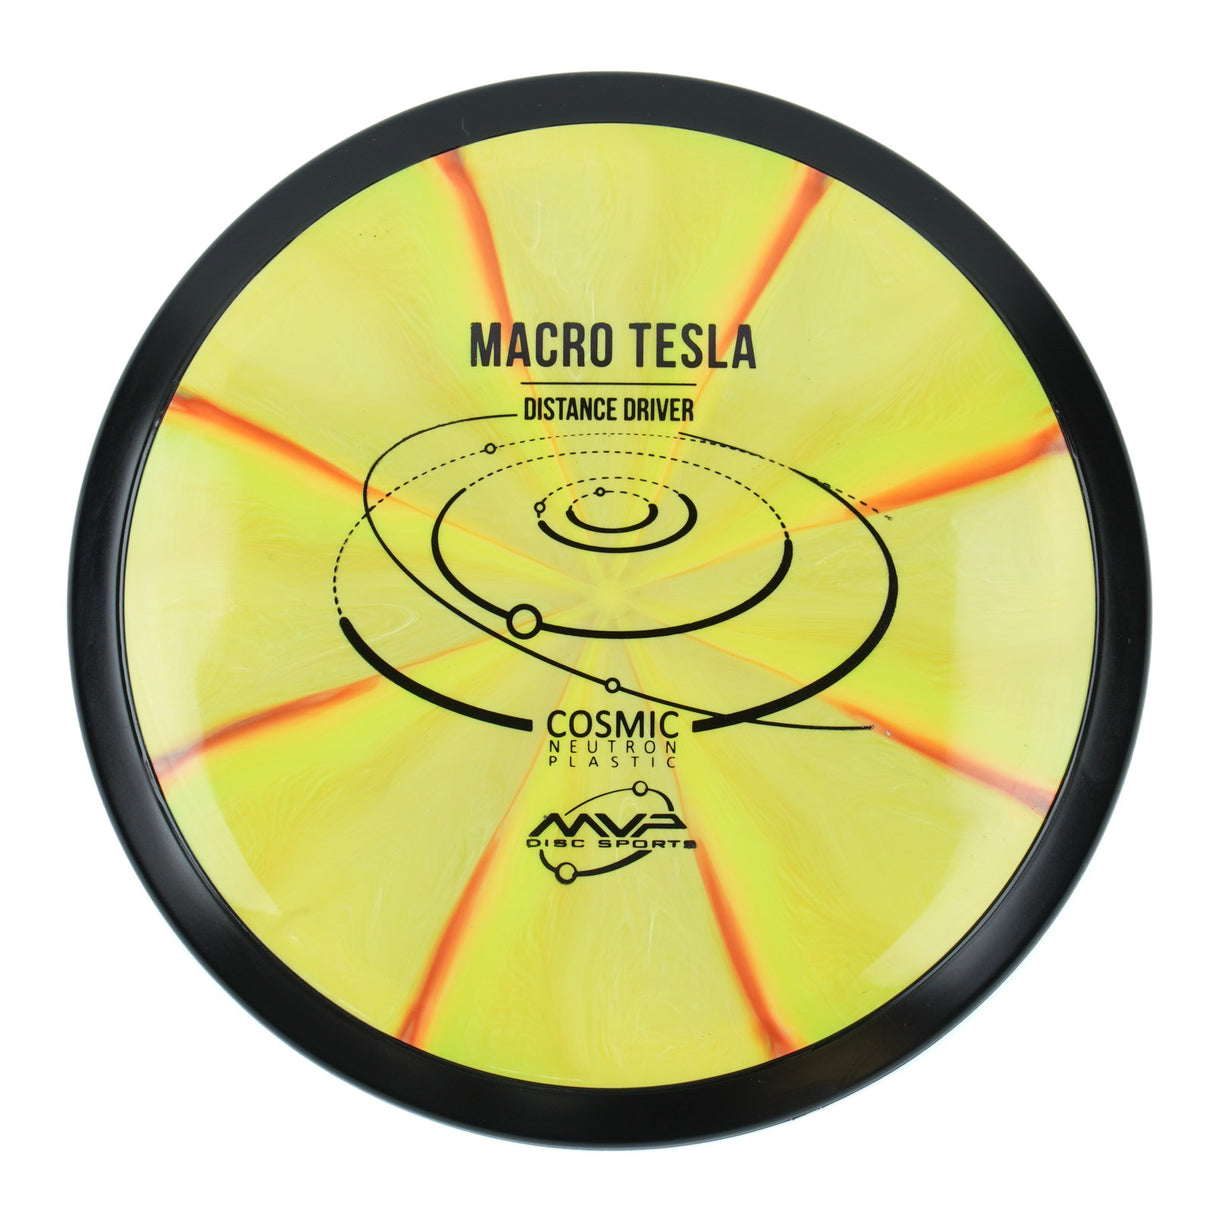 MVP Macro Tesla - Cosmic Neutron 81g | Style 0014